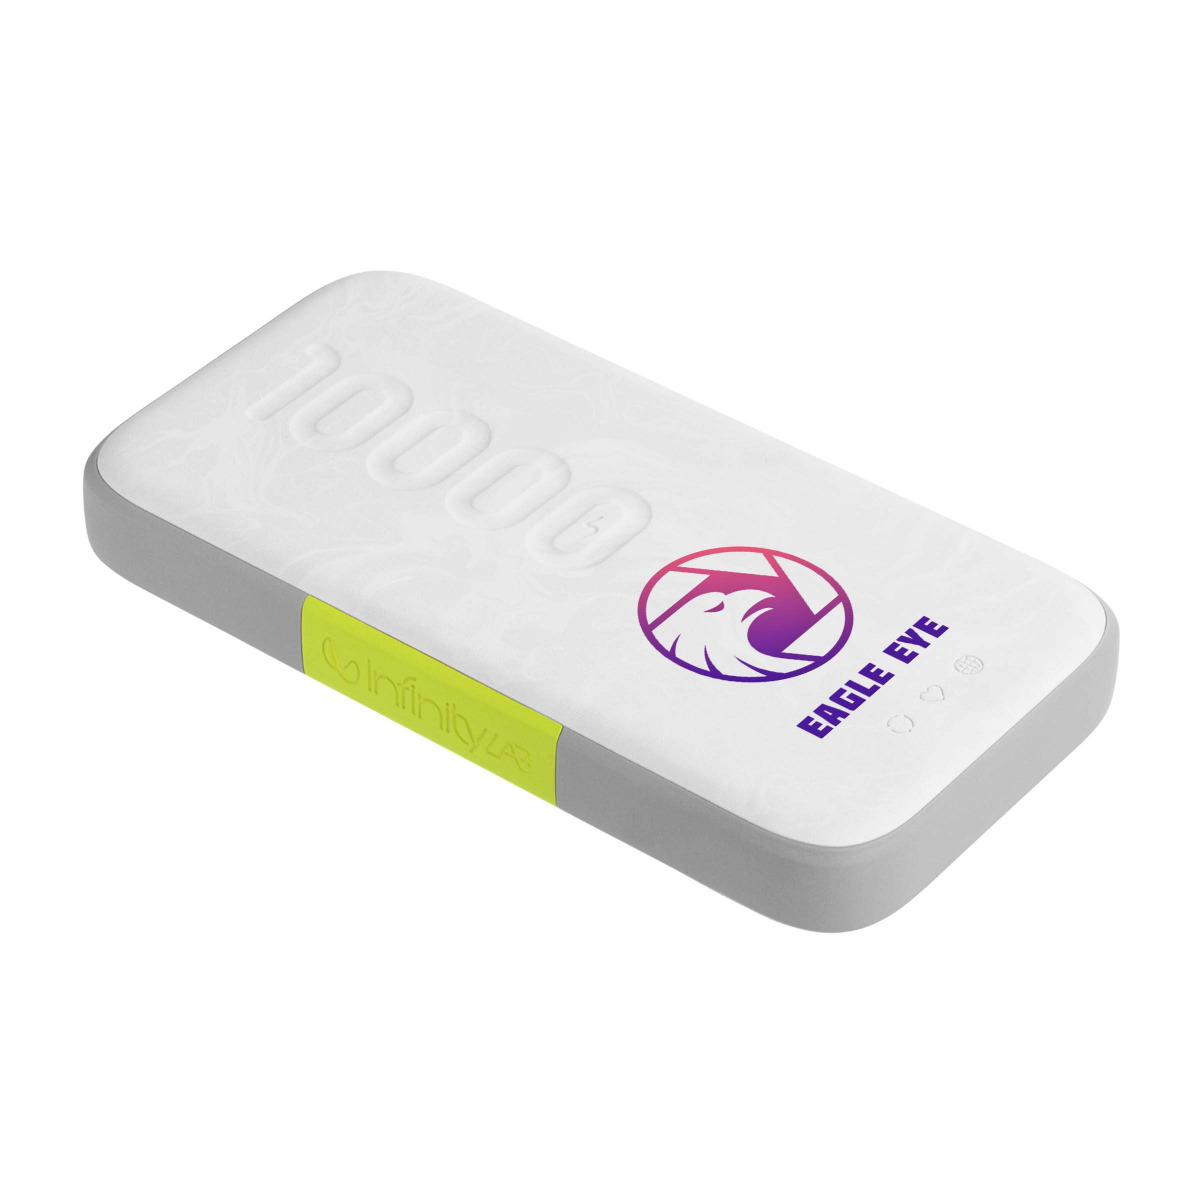 InfinityLab InstantGo 10000 Wireless - Personalización digital a todo color y faja a todo color